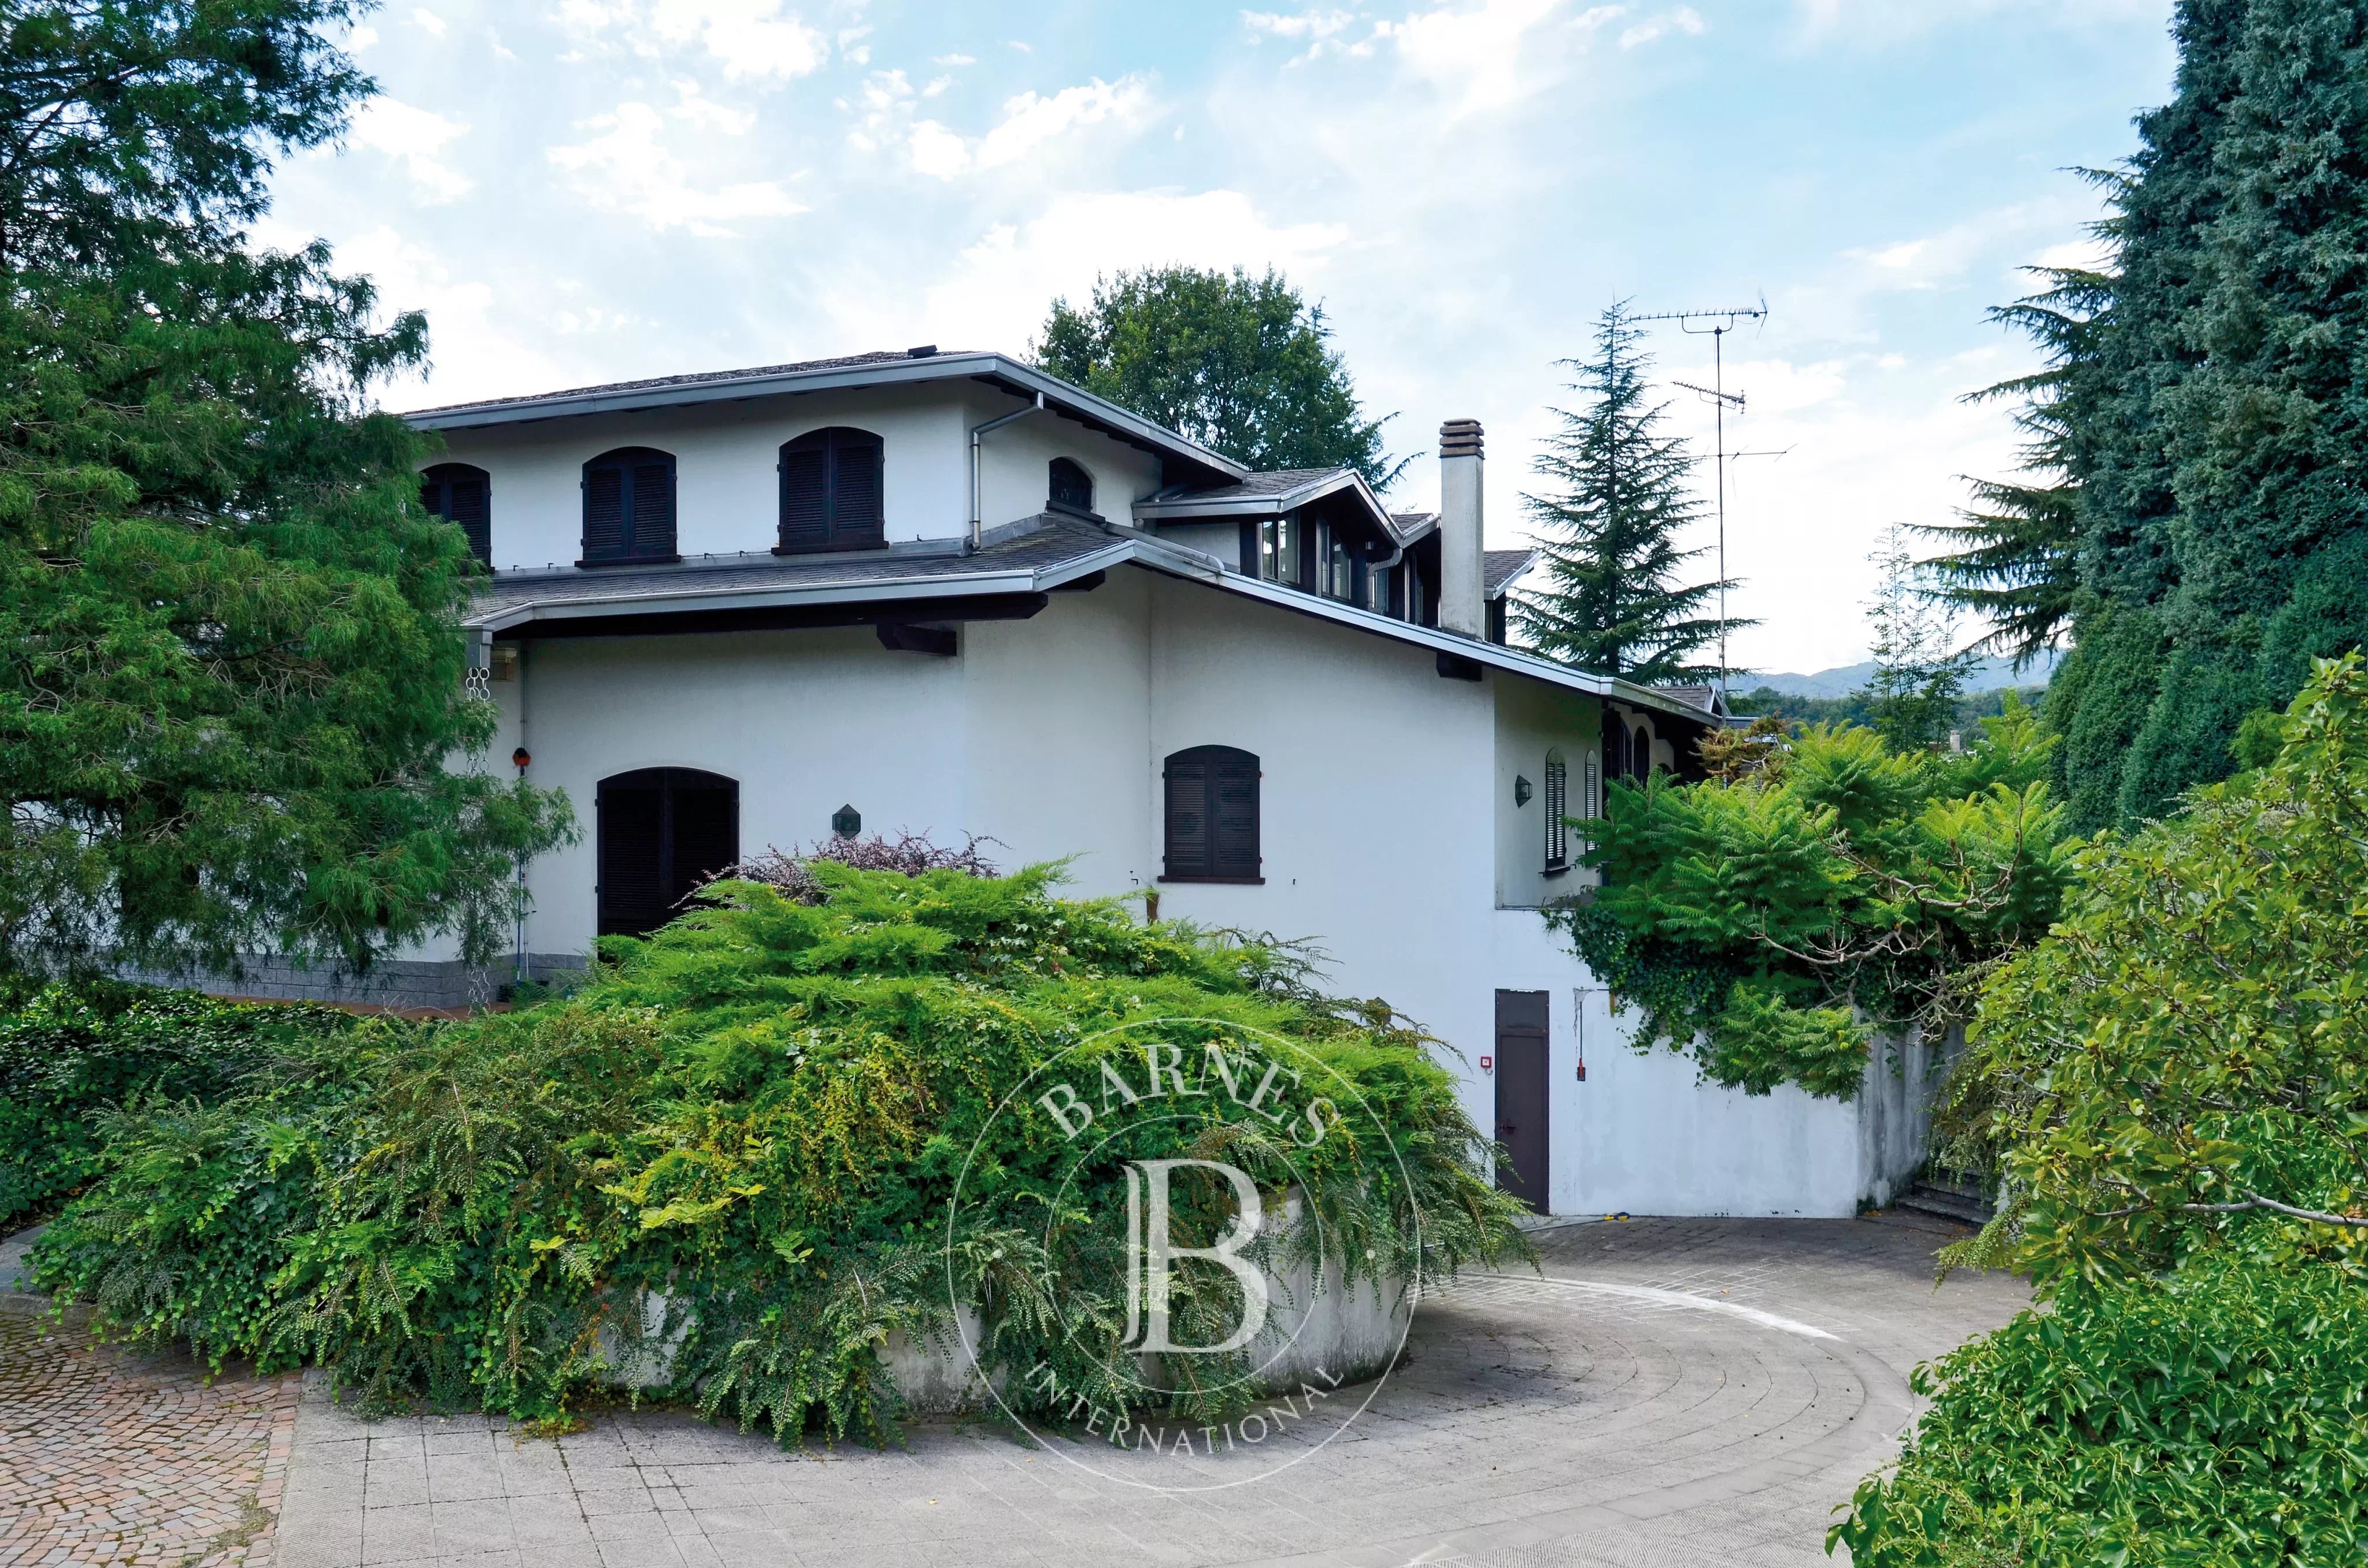 Villa prestigieuse avec piscine intérieure spectaculaire, écuries et parc. Borgomanero. Lacs de la région : Maggiore et Orta